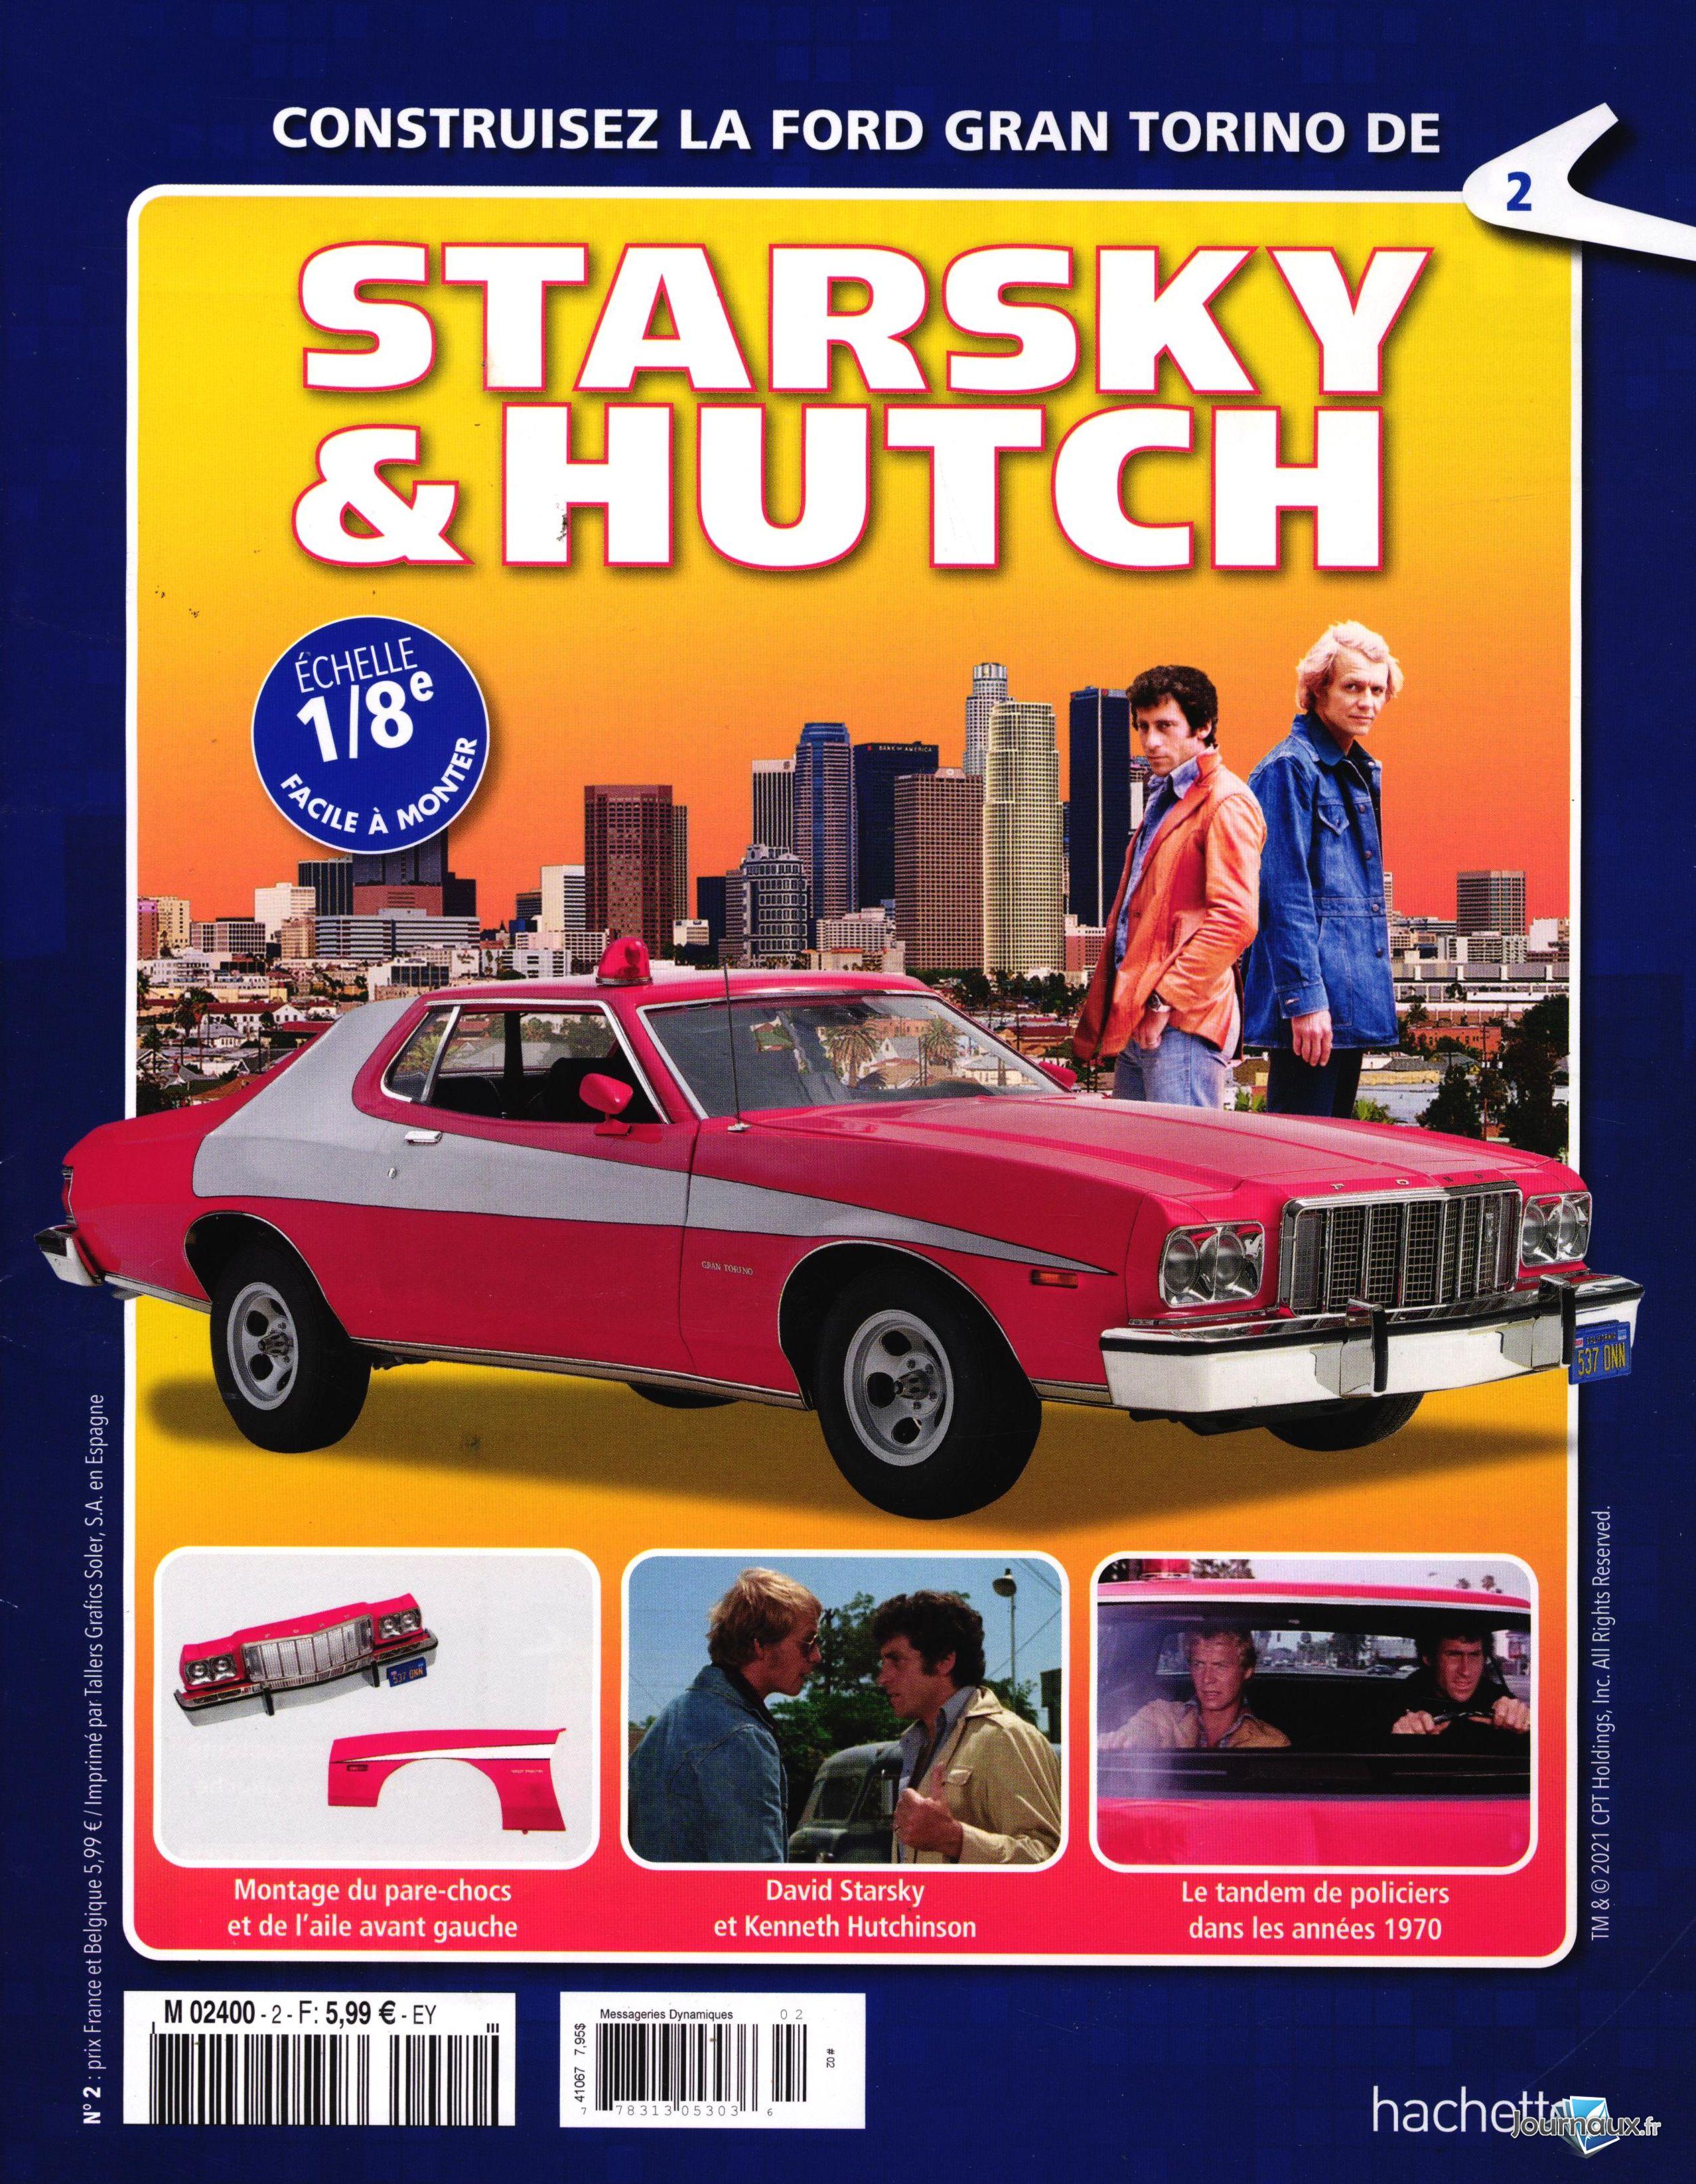 Insolite. Il s'offre la voiture mythique de Starsky et Hutch !